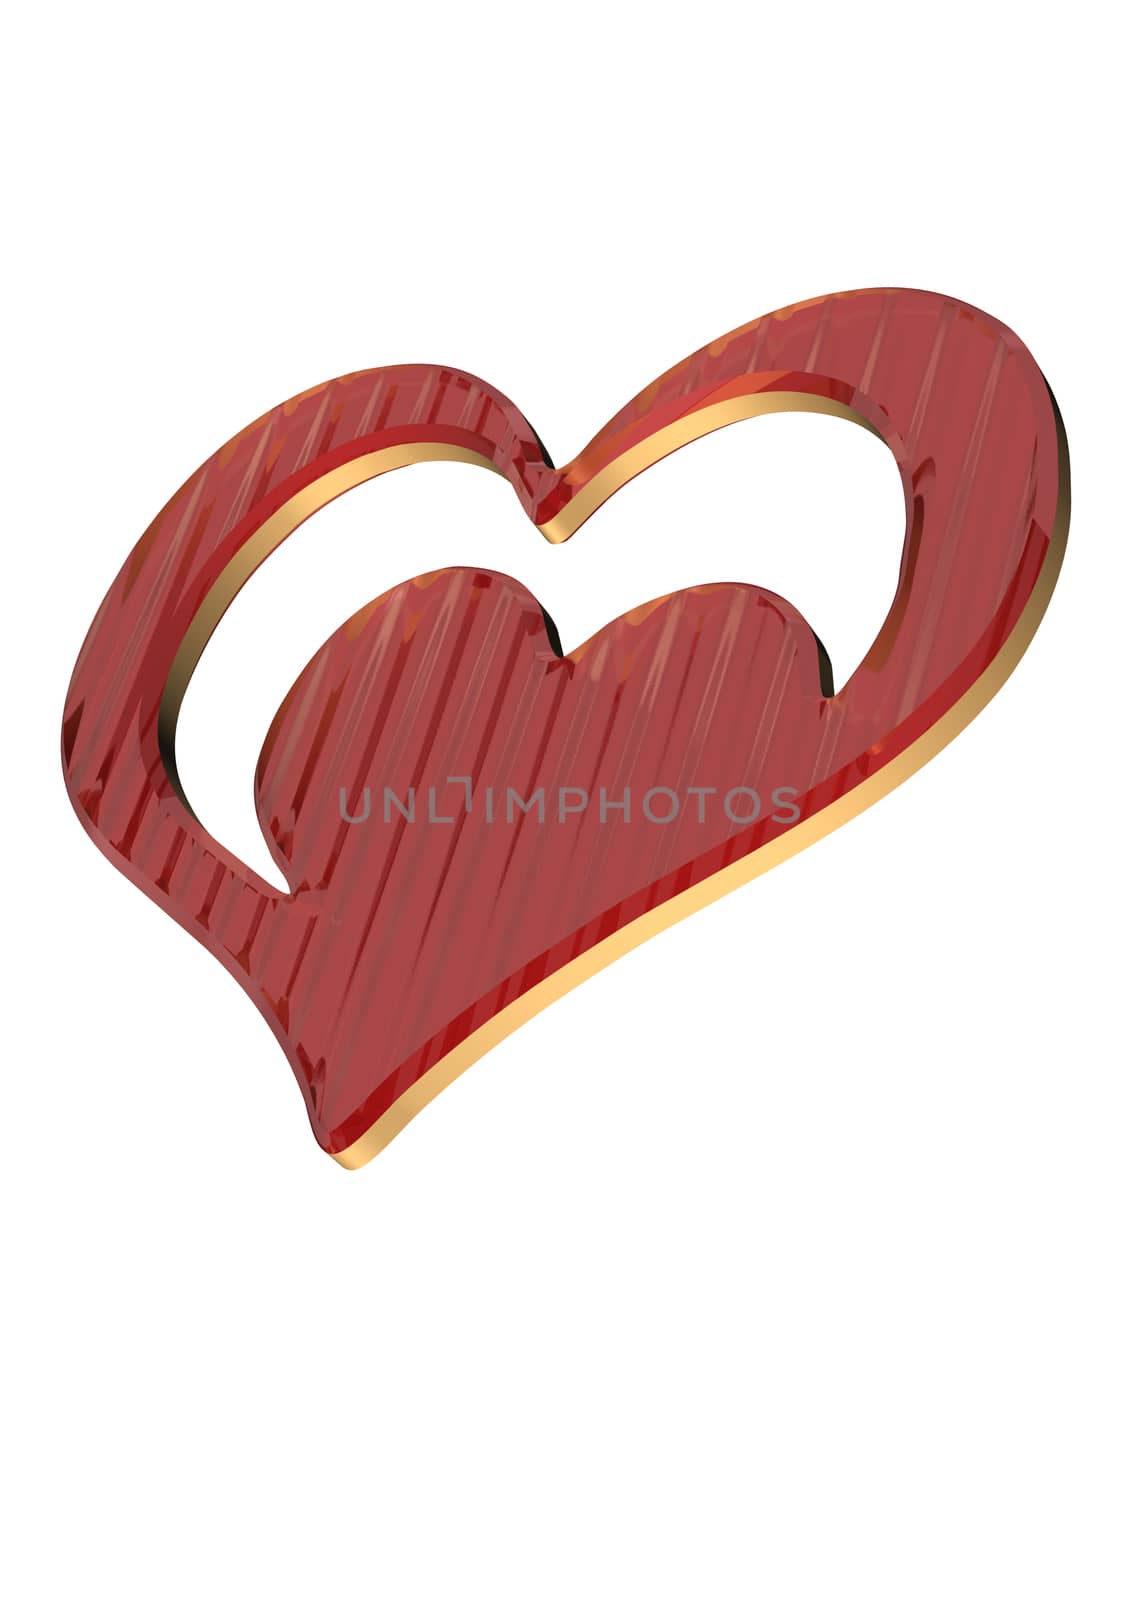 Red valentine heart. 3D render. by richter1910